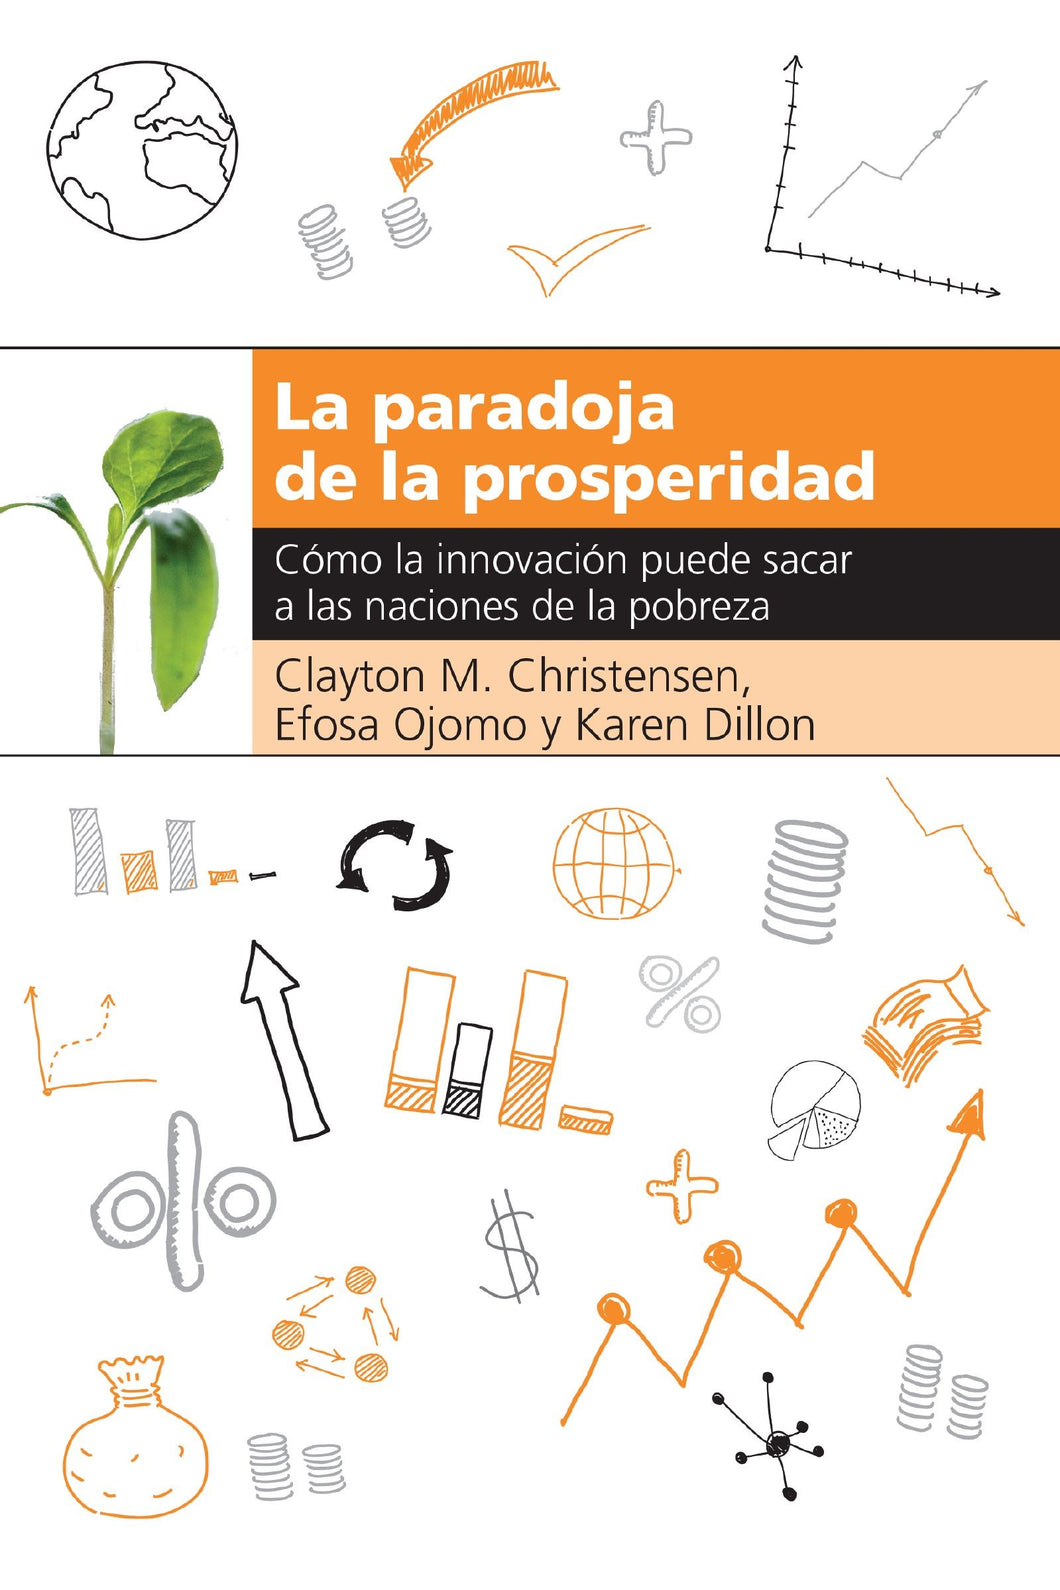 Spanish-The Prosperity Paradox (La paradoja de la prosperidad)